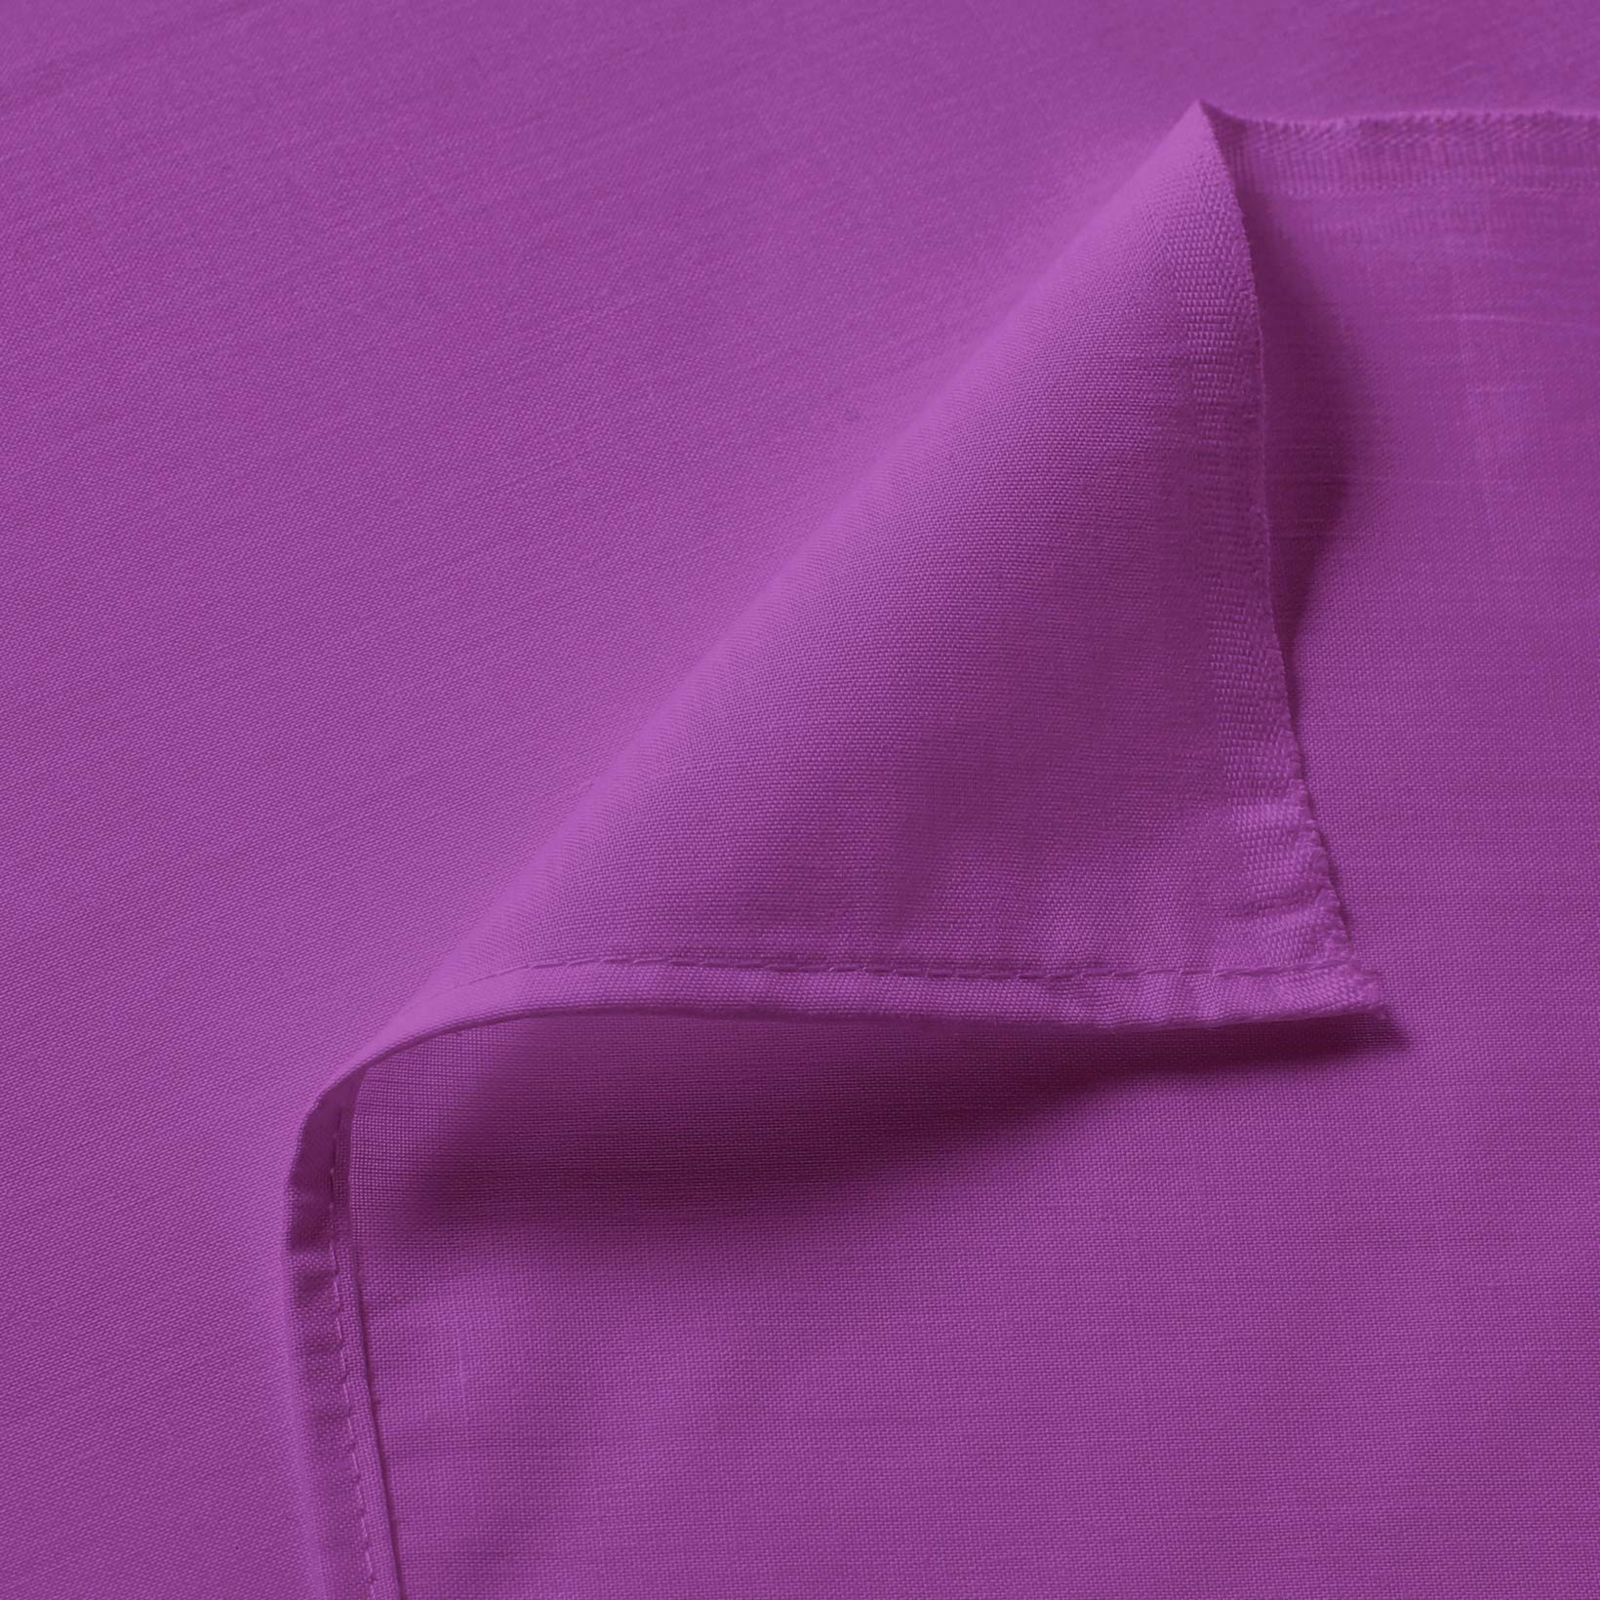 Bavlněné prostěradlo - fialové - plachta